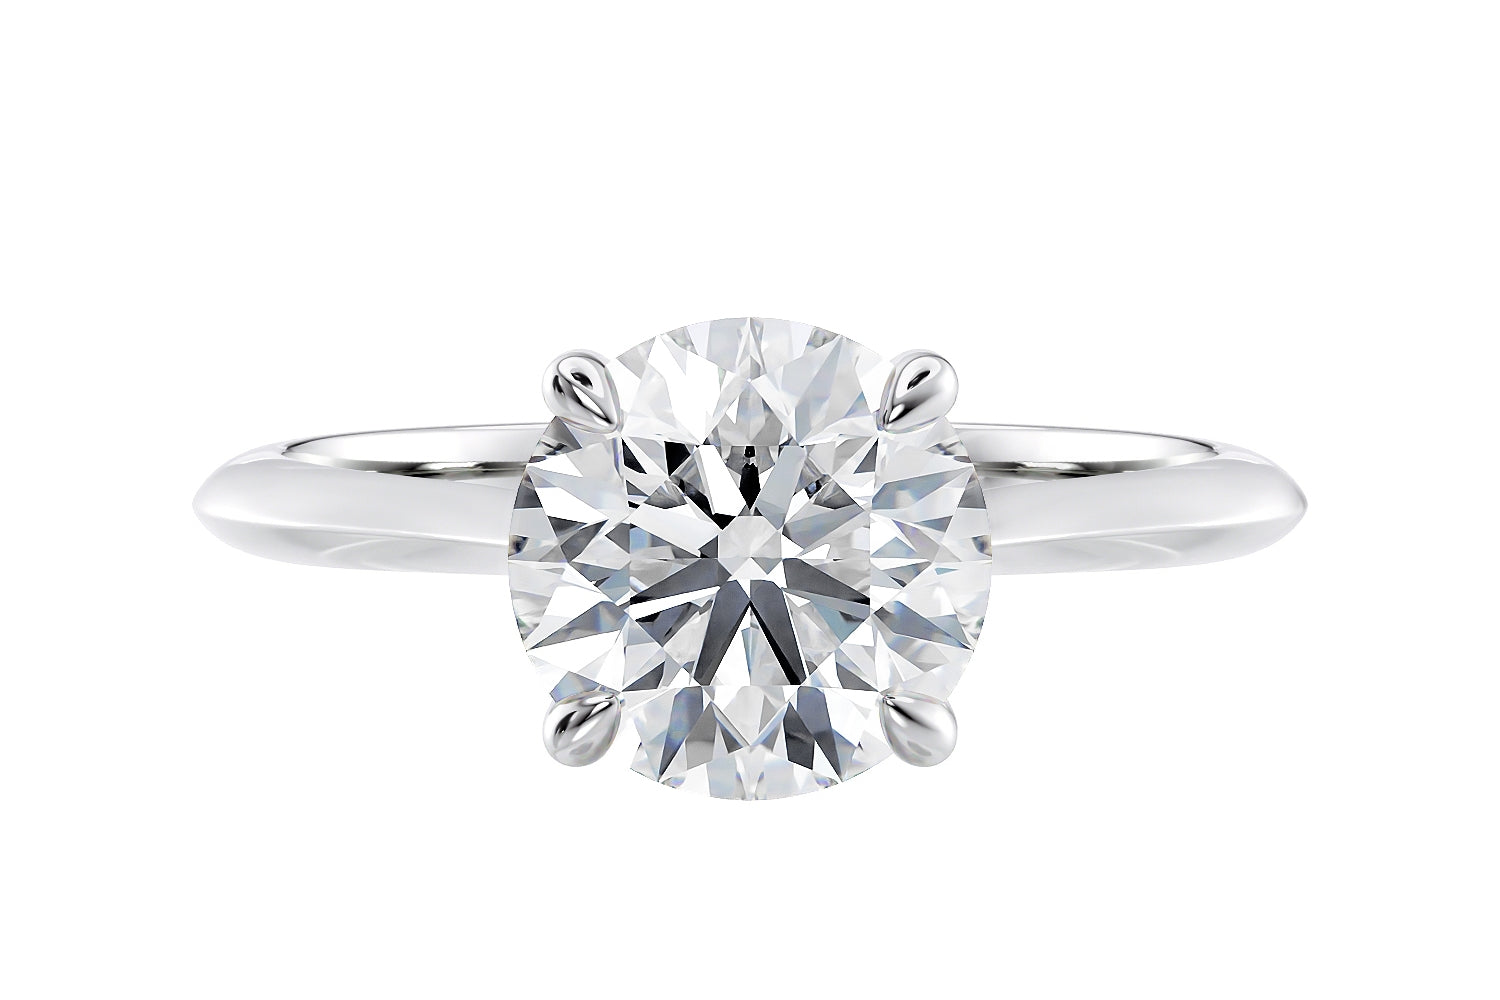 1 carat diamond solitaire engagement ring platinum.